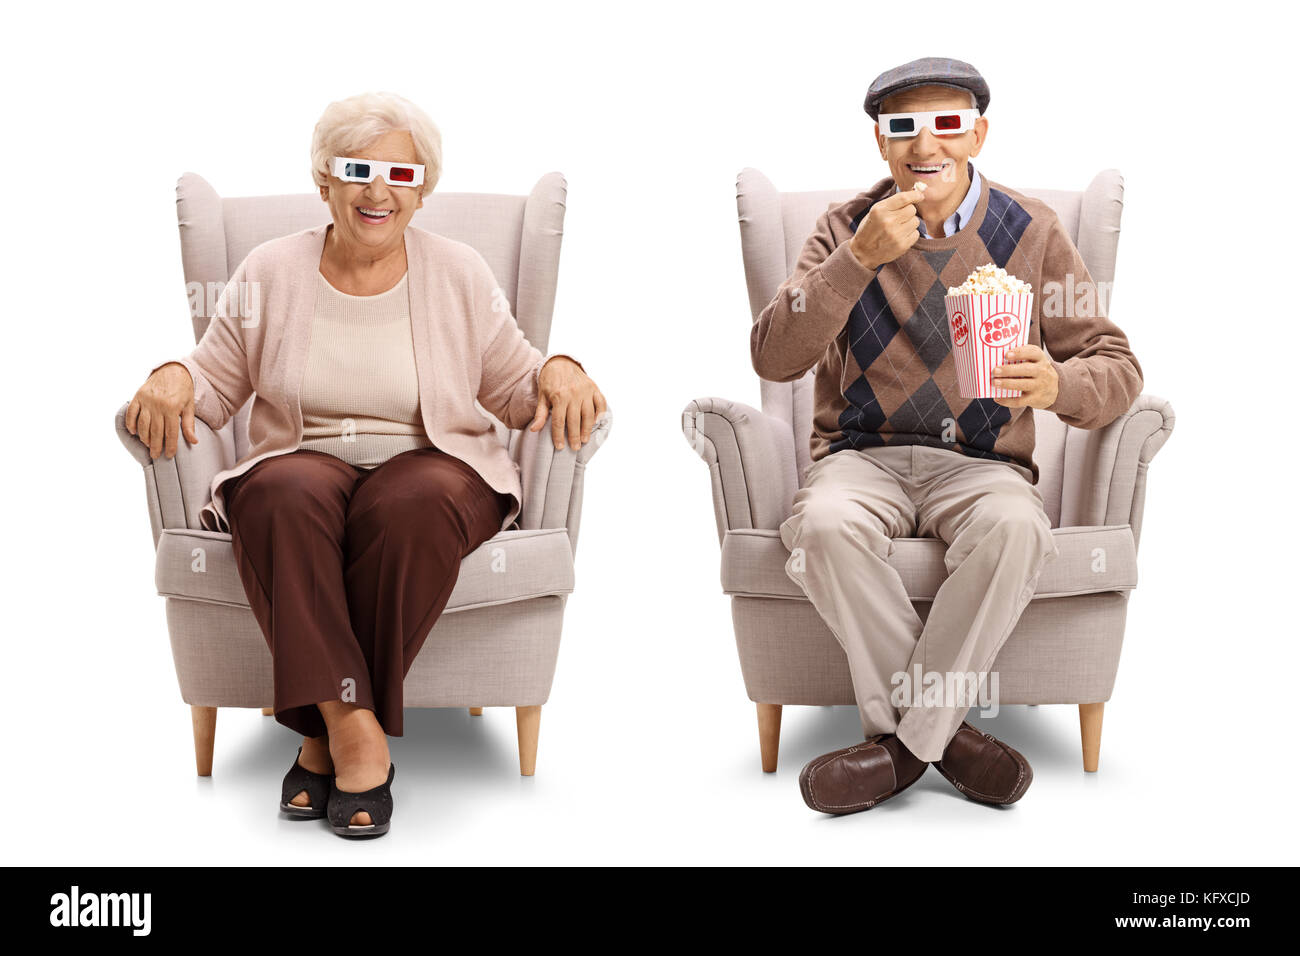 Les personnes âgées avec des lunettes 3-D et du popcorn assis dans des fauteuils et regardant la caméra isolé sur fond blanc Banque D'Images